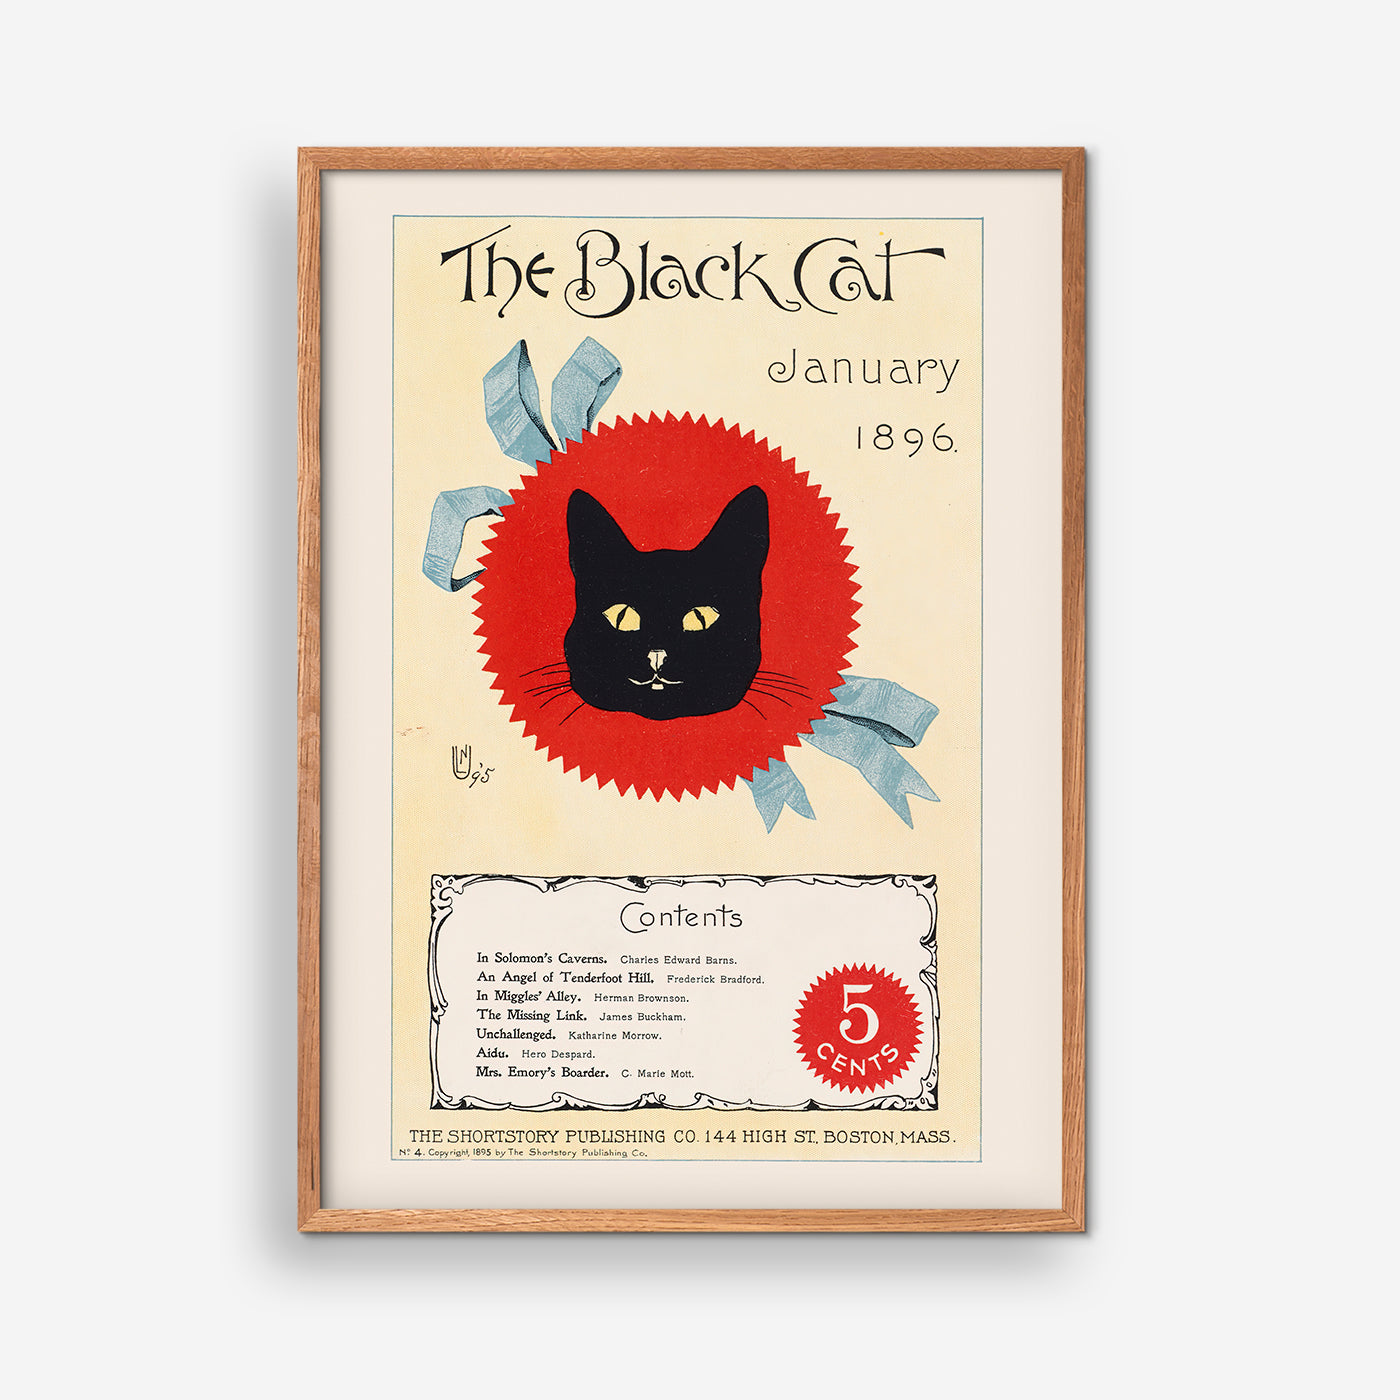 The black cat, January 1896